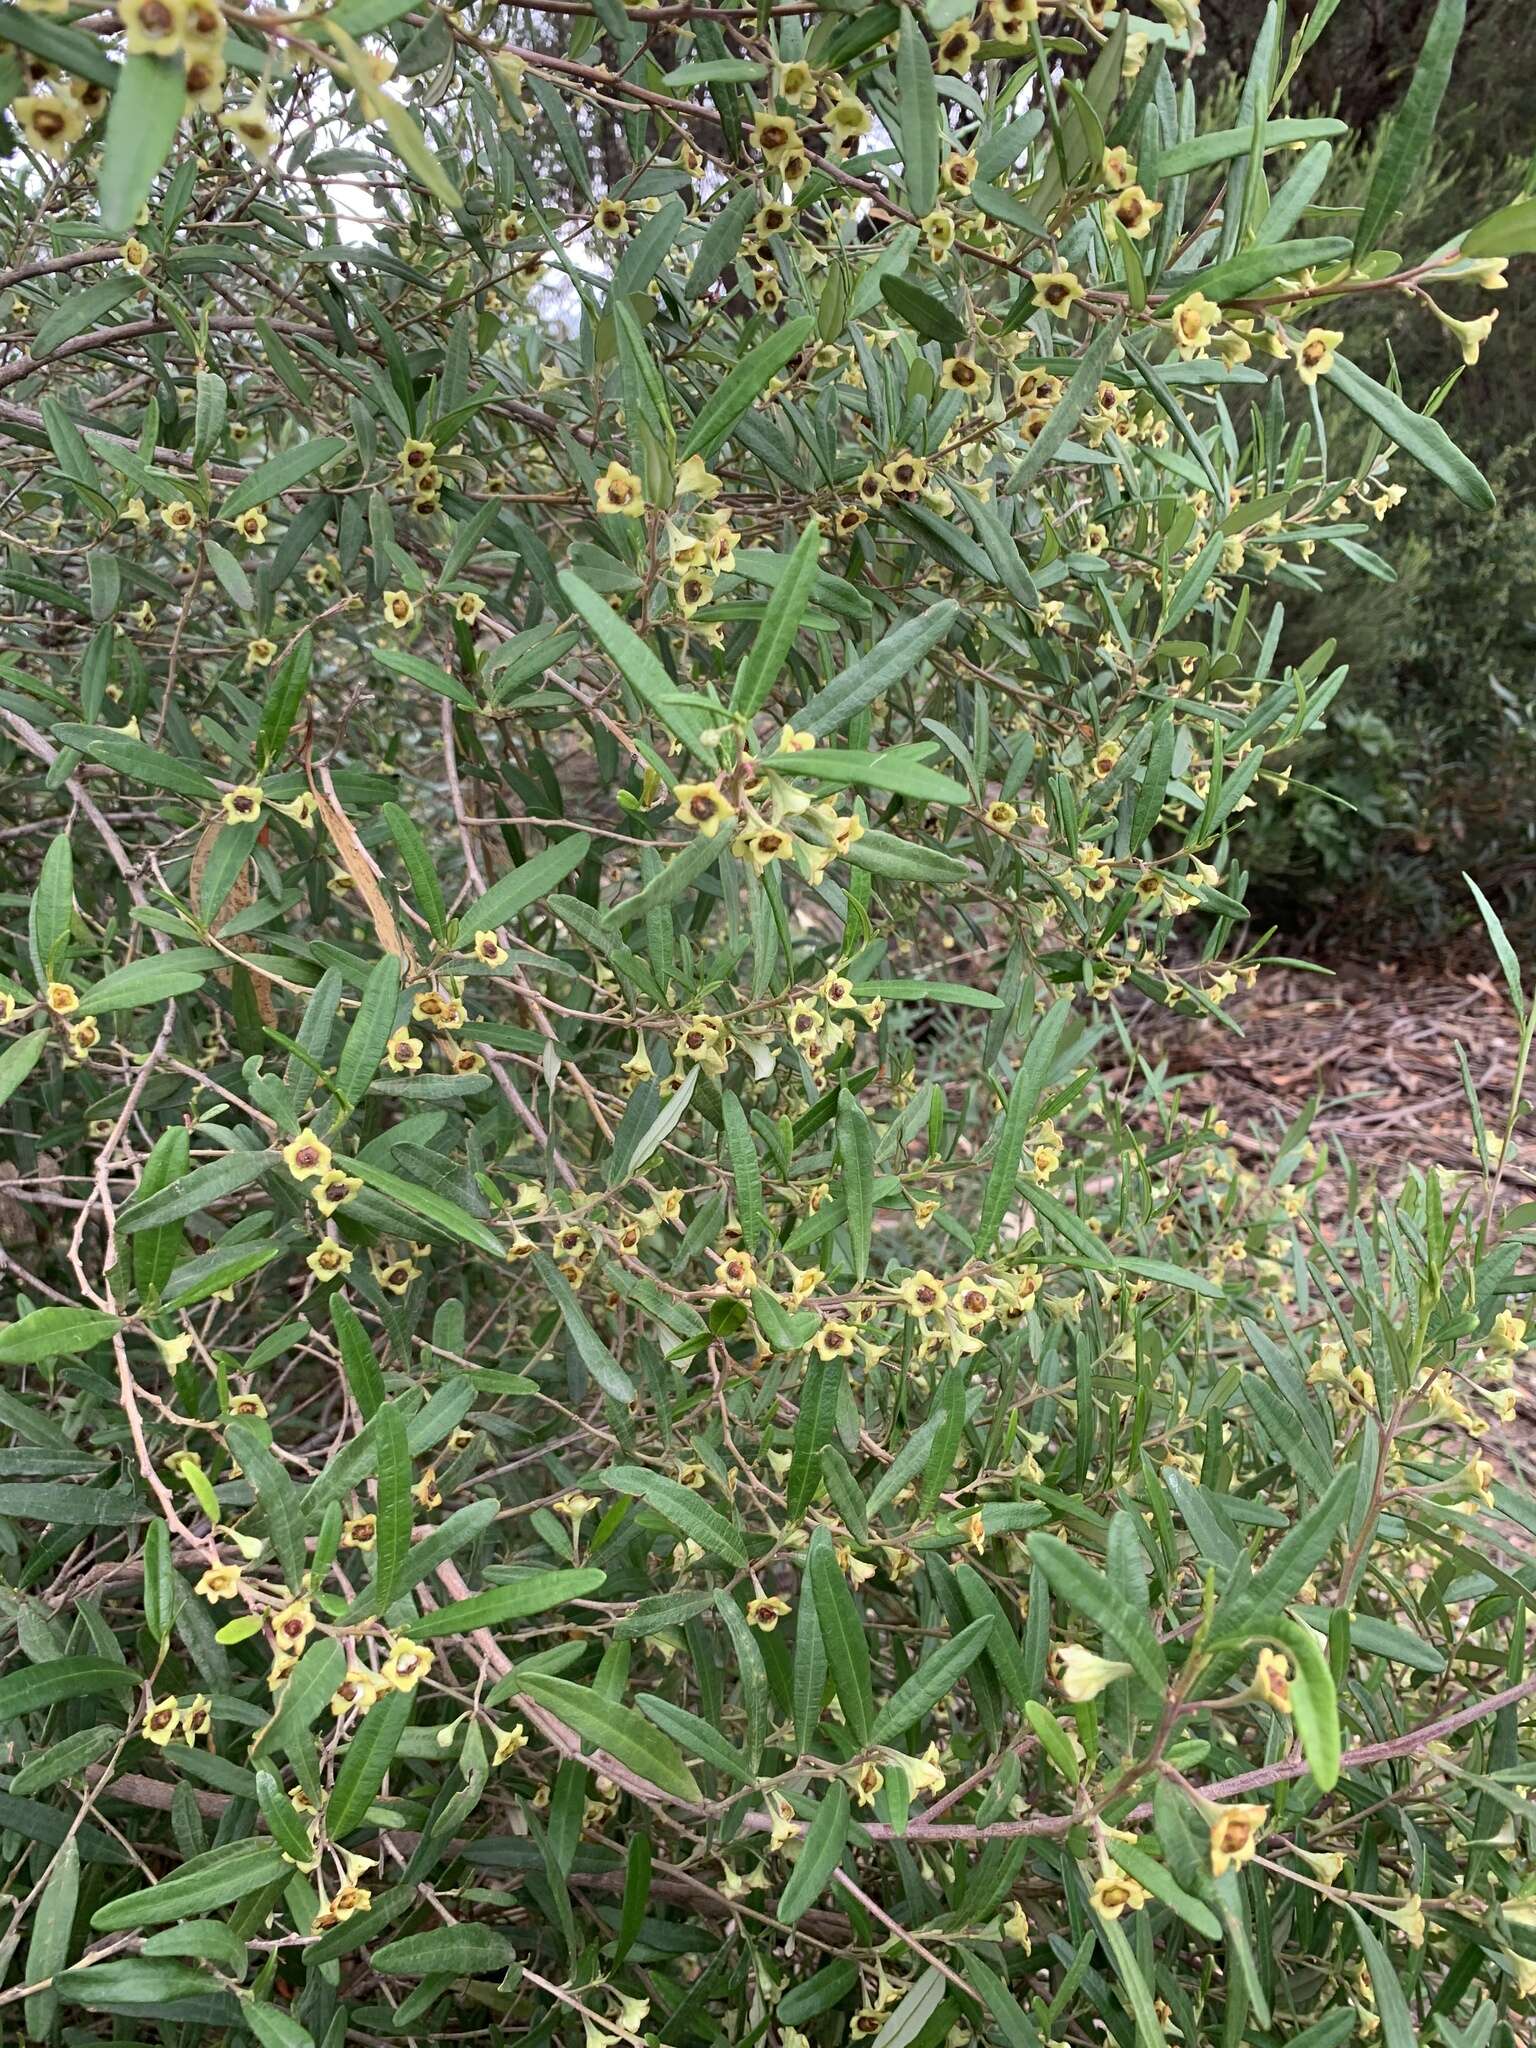 Sivun Beyeria lasiocarpa (F. Muell.) Müll. Arg. kuva